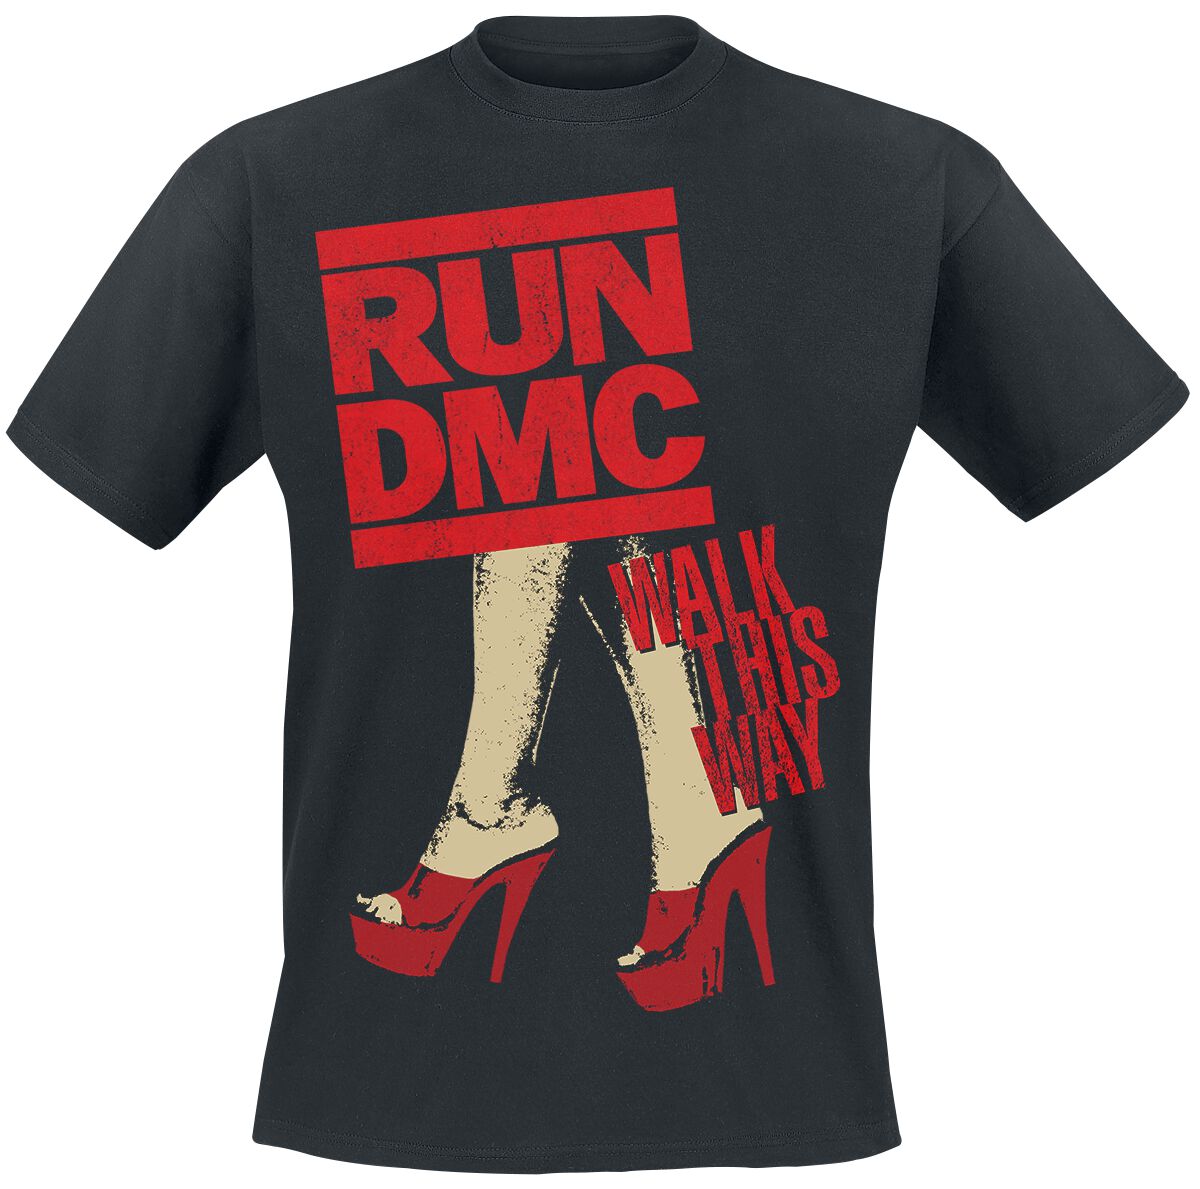 Run DMC T-Shirt - Walk This Way Legs - S bis L - für Männer - Größe L - schwarz  - Lizenziertes Merchandise!